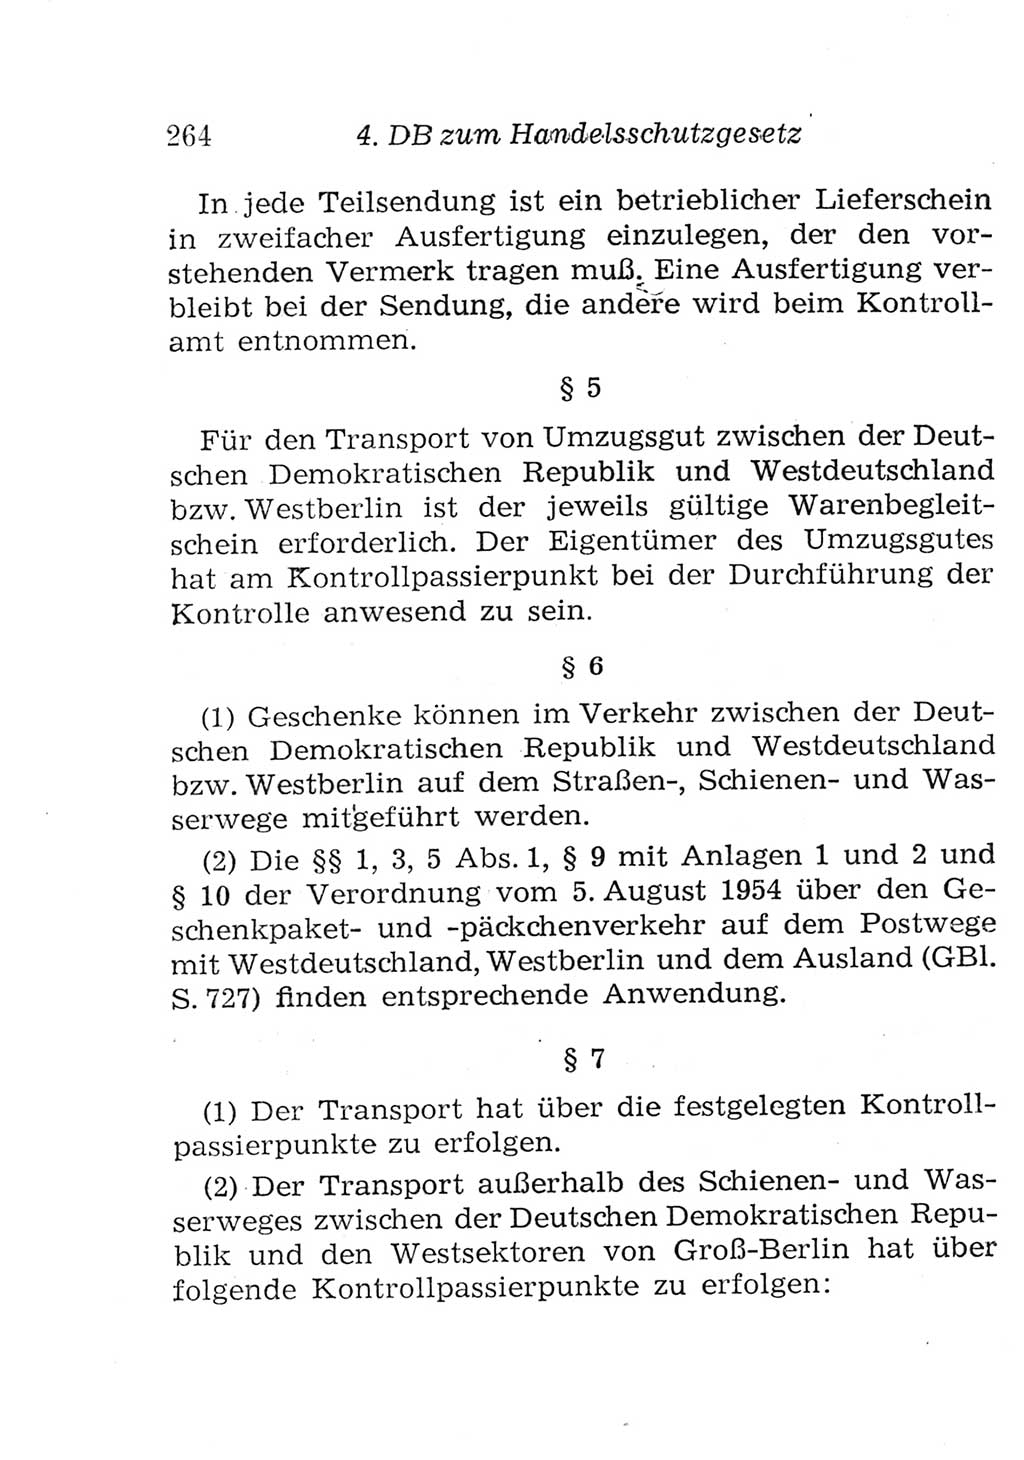 Strafgesetzbuch (StGB) und andere Strafgesetze [Deutsche Demokratische Republik (DDR)] 1957, Seite 264 (StGB Strafges. DDR 1957, S. 264)